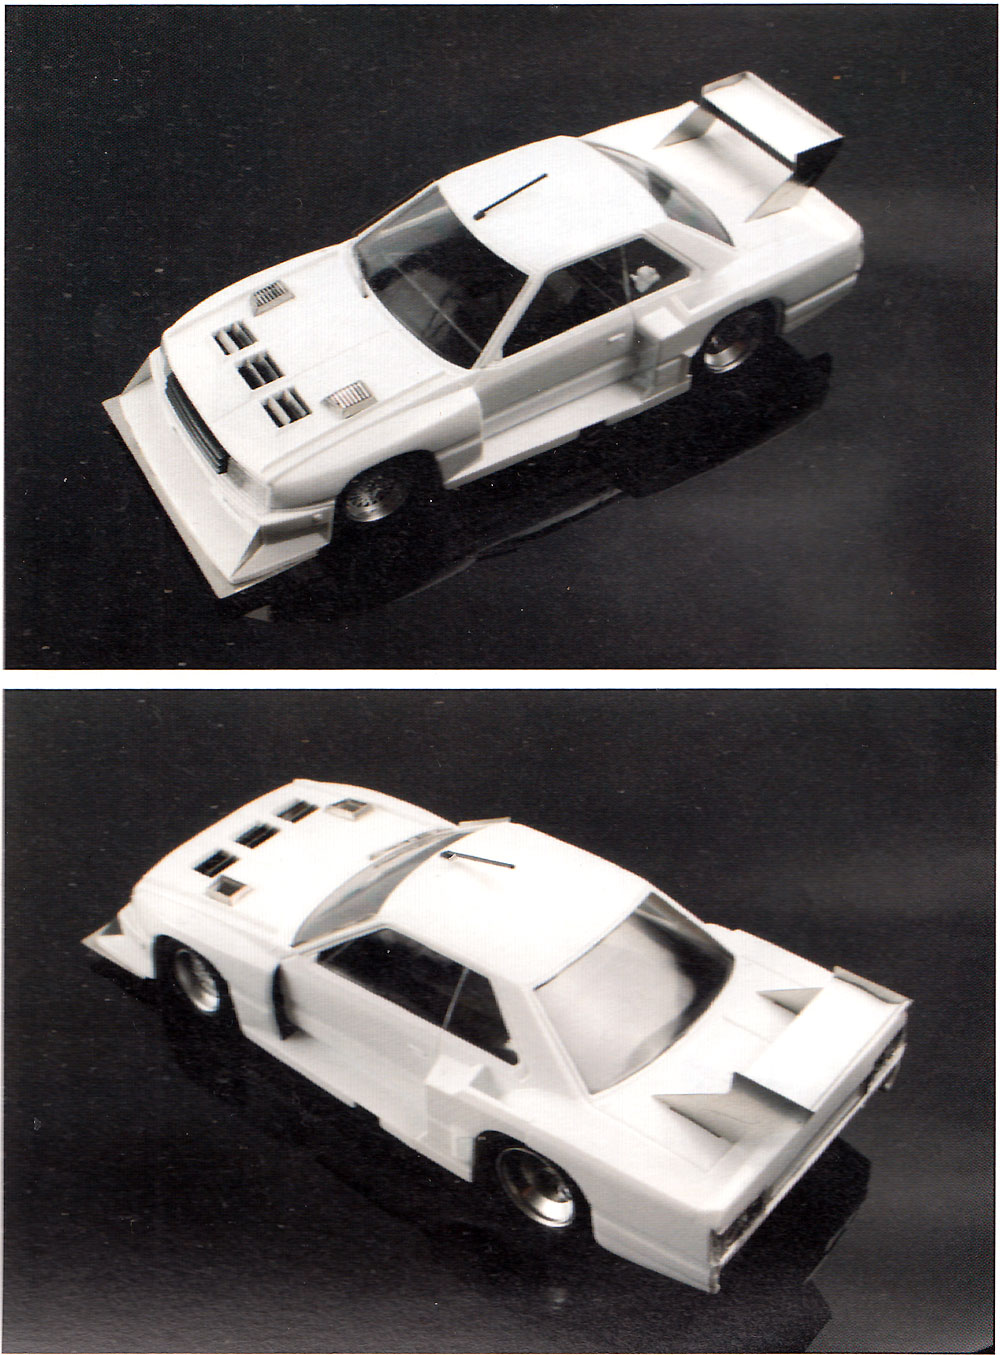 ニッサン KDR30 スカイライン スーパーシルエット '82 共通ディテールアップパーツセット エッチング (アオシマ 1/24 ディテールアップパーツシリーズ No.004) 商品画像_4